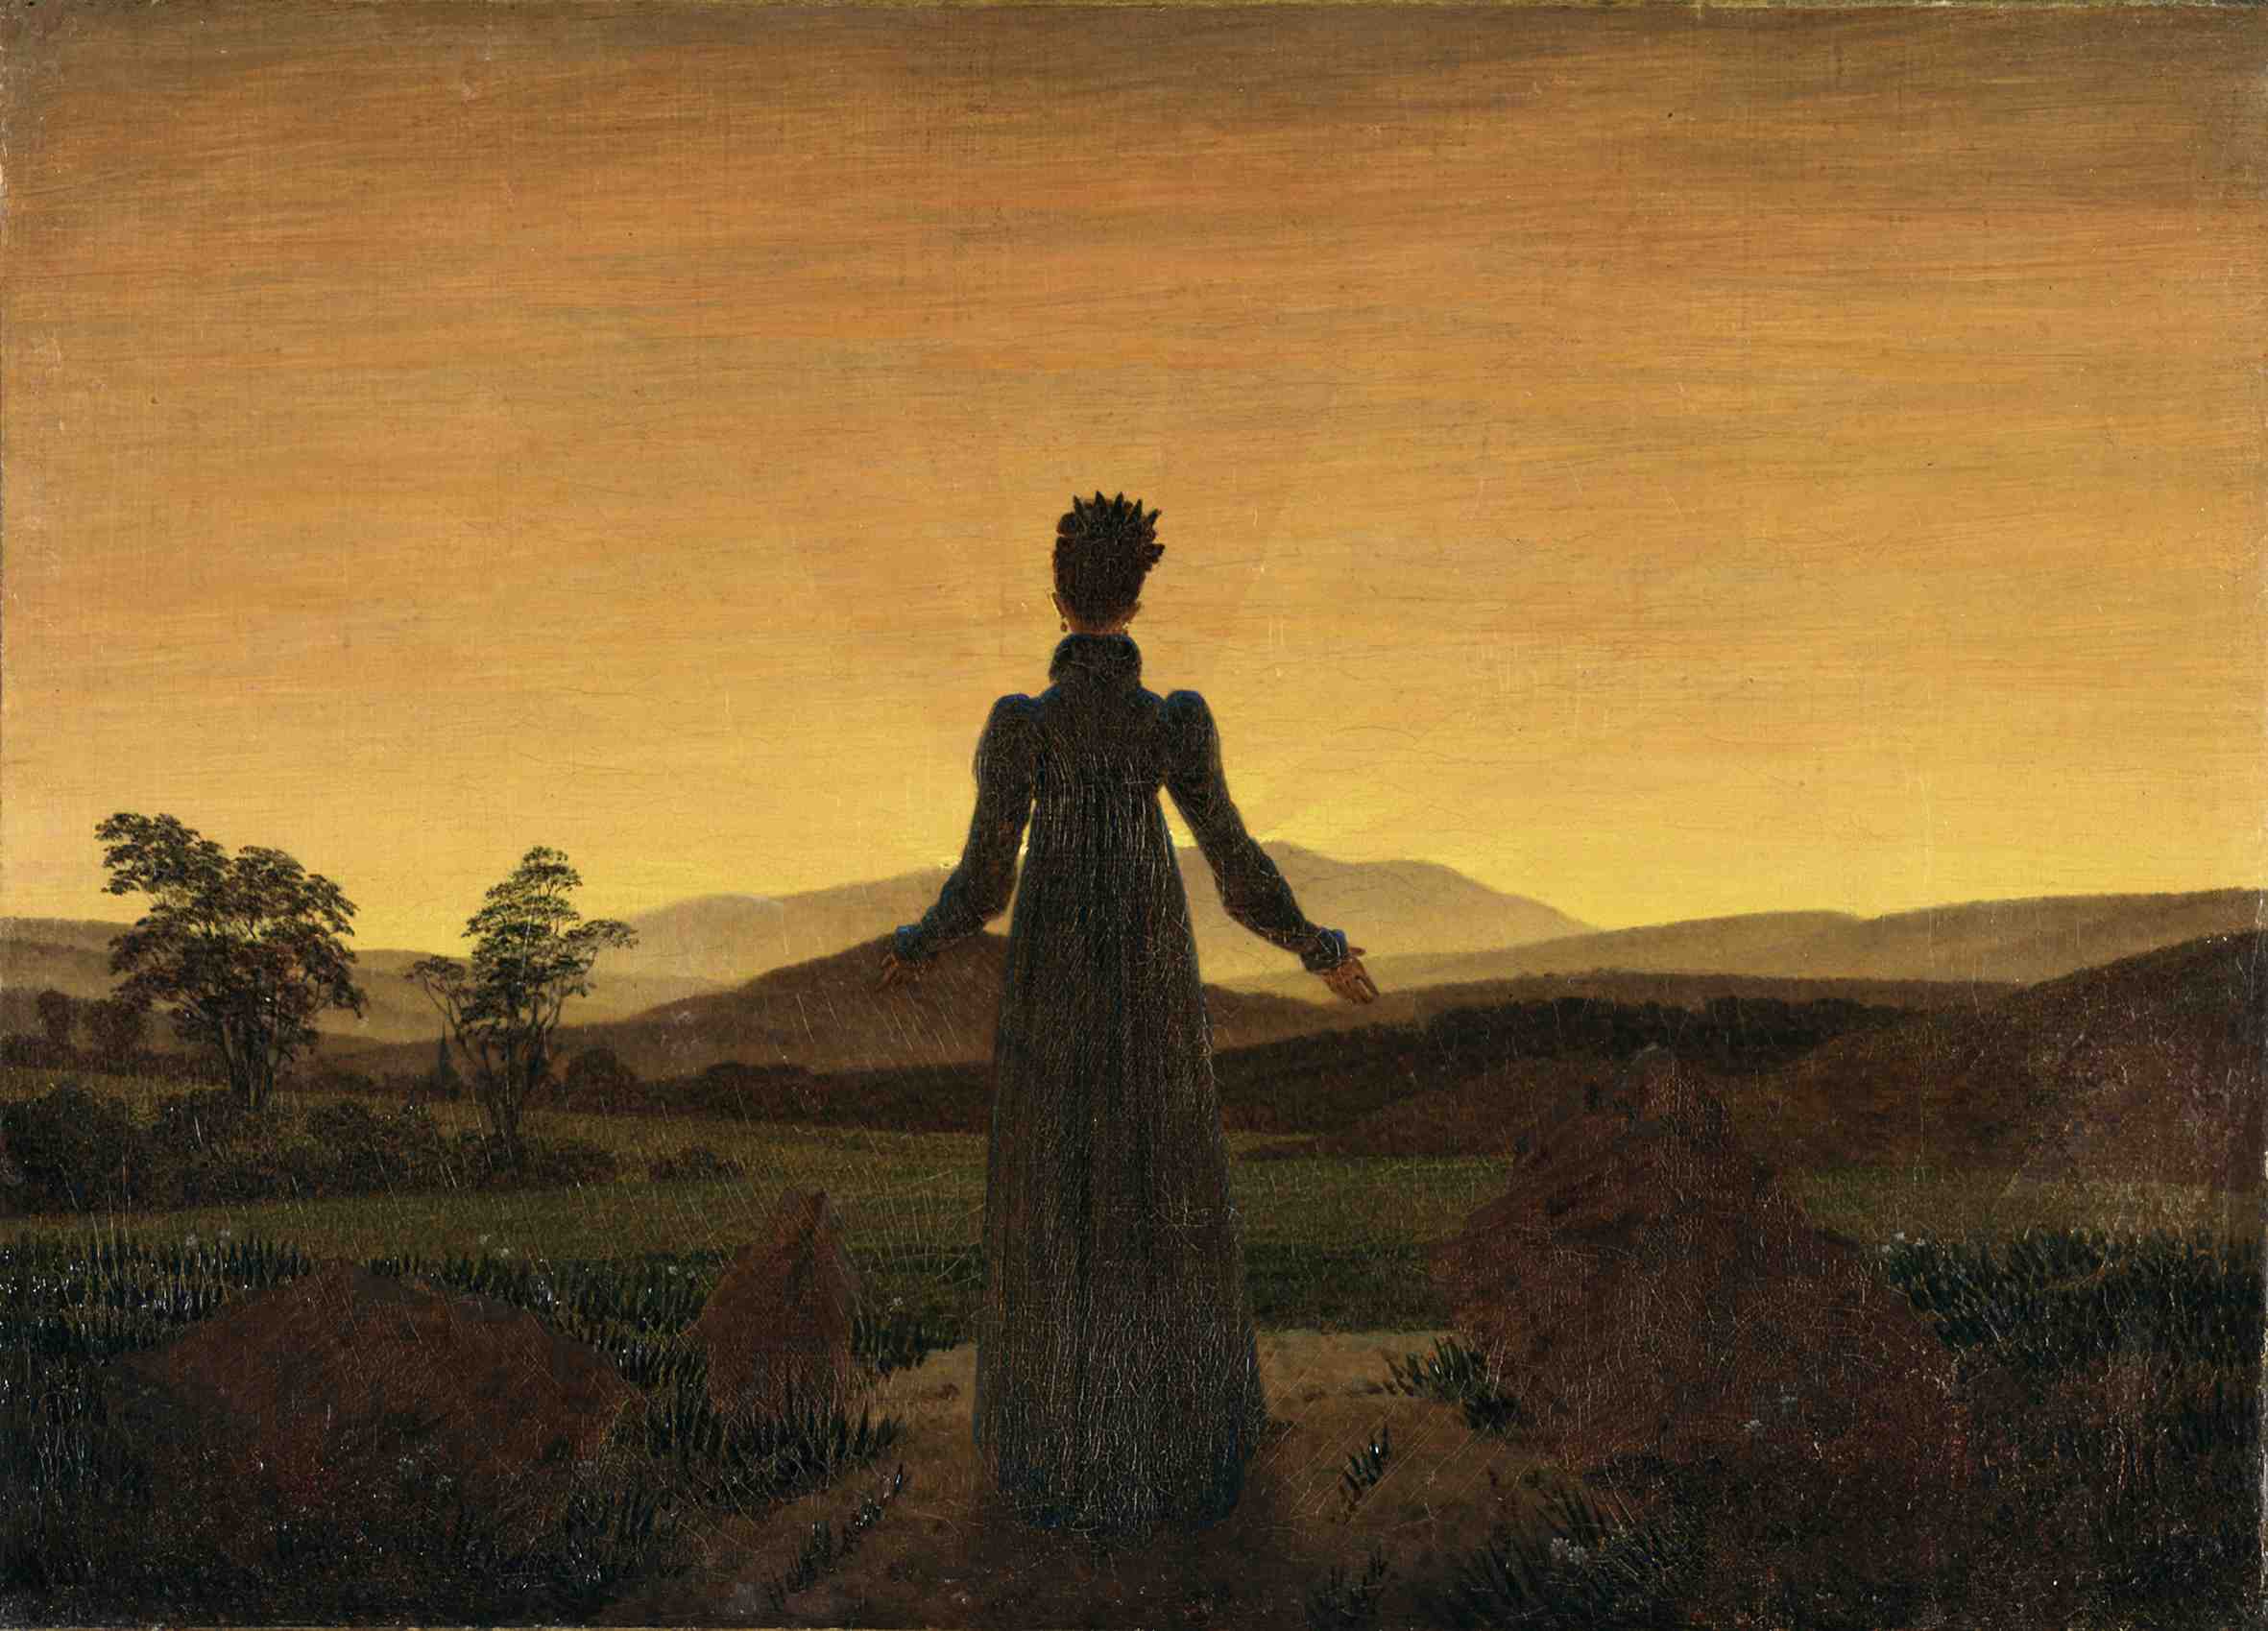 Frau vor der aufgehenden Sonne by Caspar David Friedrich - c. 1818 - 22 × 30 cm Museum Folkwang